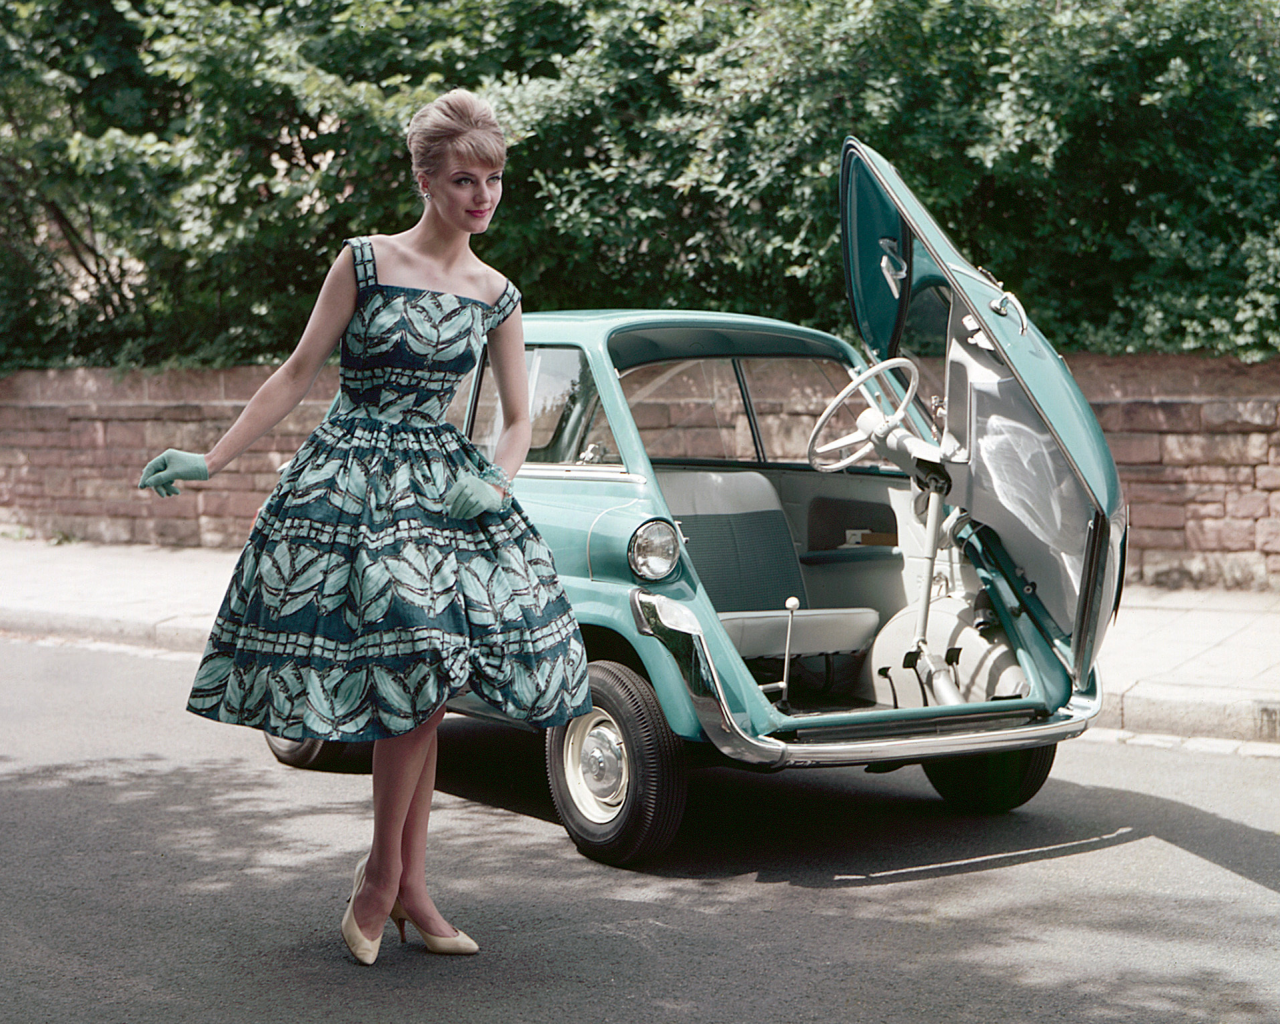 в платье, девушка, а-ля 60 годы, автомобиль, микро, красивая, девушки, девушка